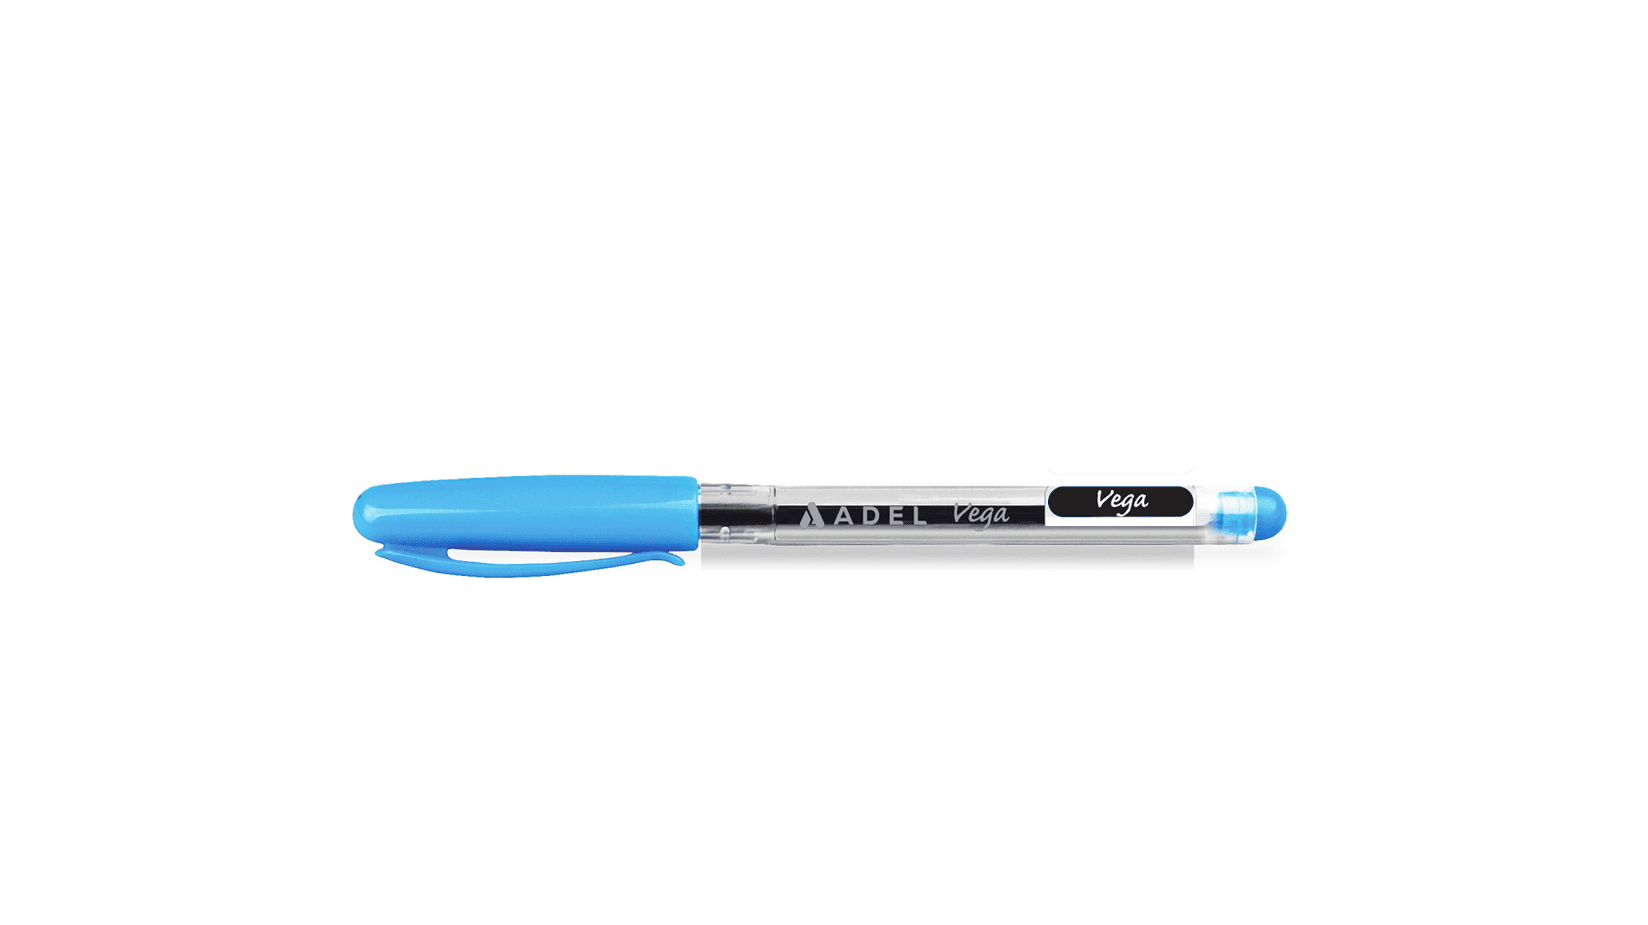 ADEL Hemijska olovka Vega plava